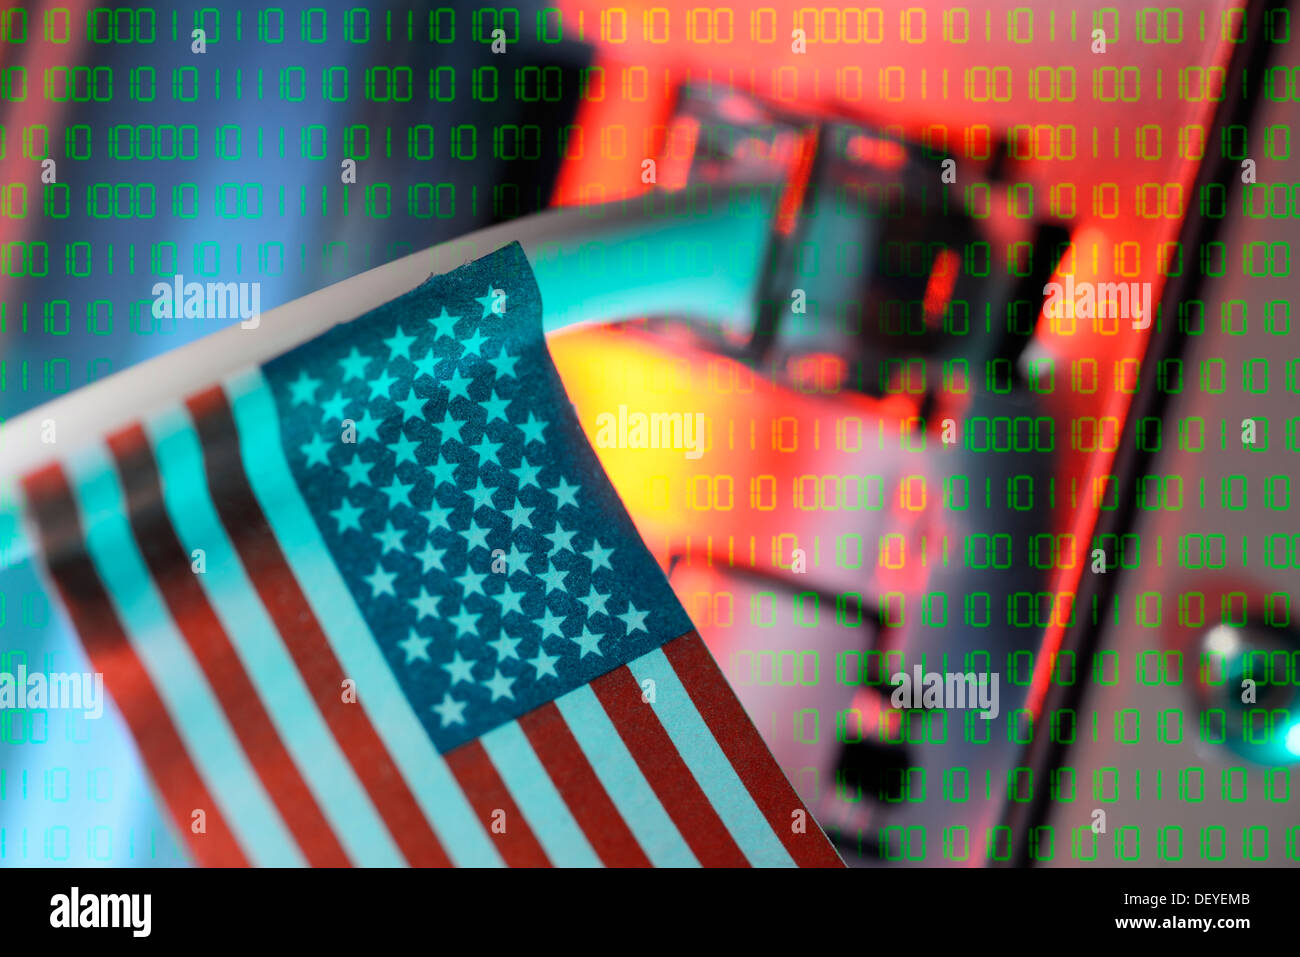 Cavo di Internet con la bandiera degli Stati Uniti, prism Spaehprogramm, Internetkabel mit USA-Fahne, Spähprogramm Prisma Foto Stock